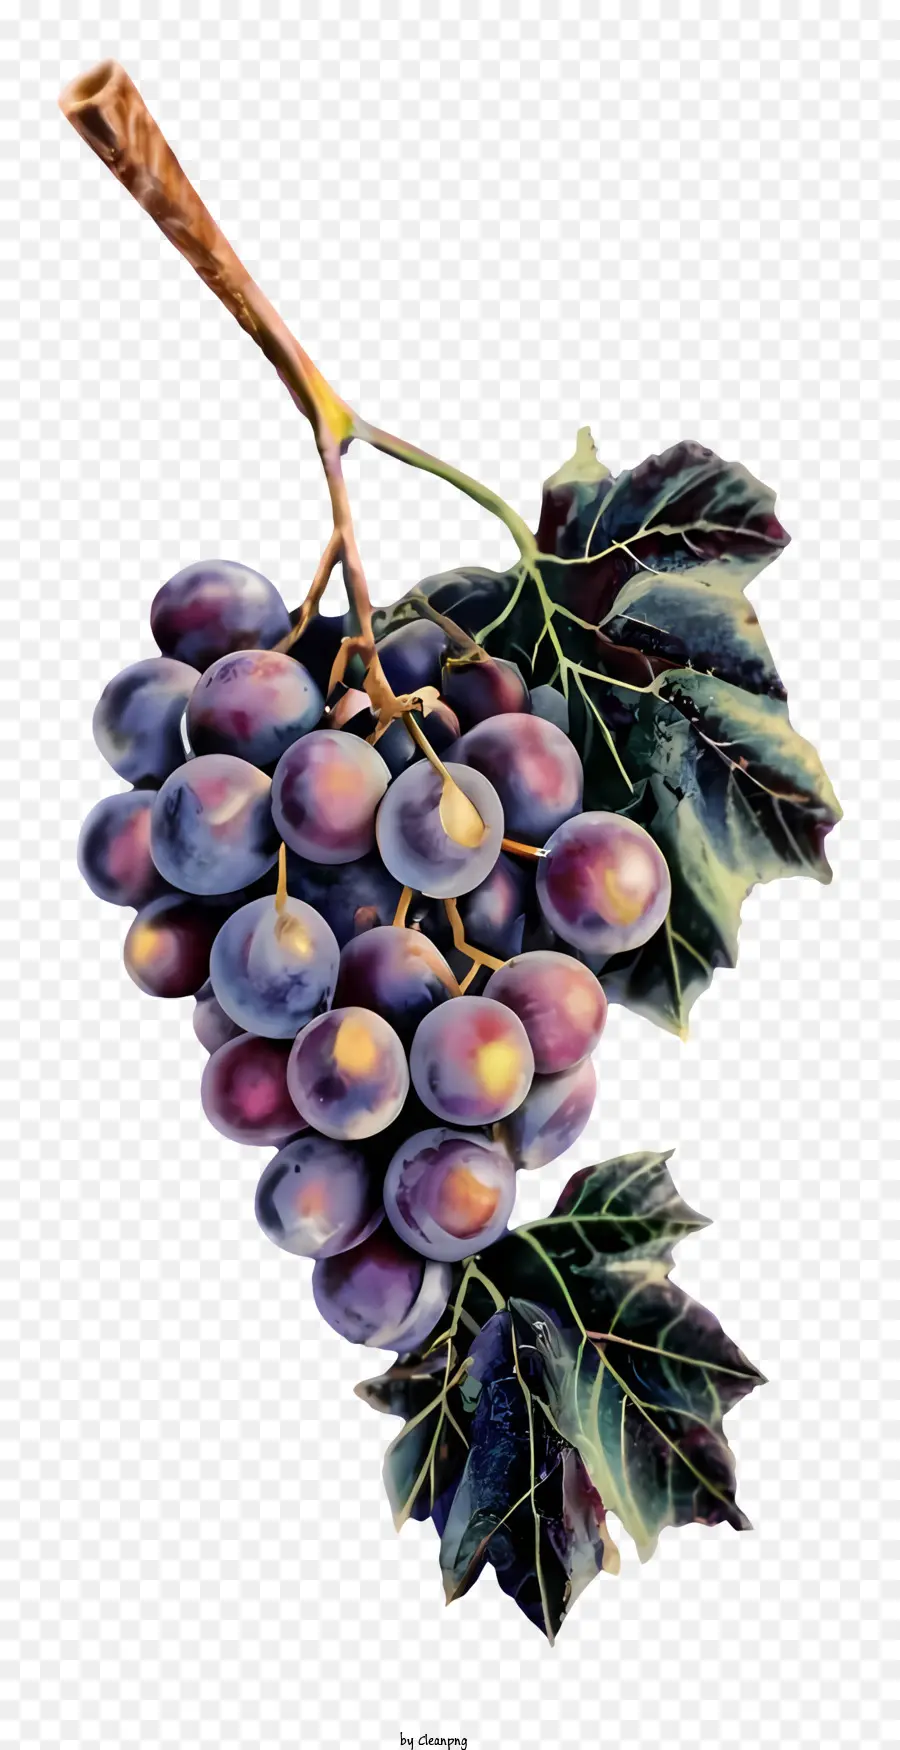 vitigno - Gruppo di uve viola con foglie colorate